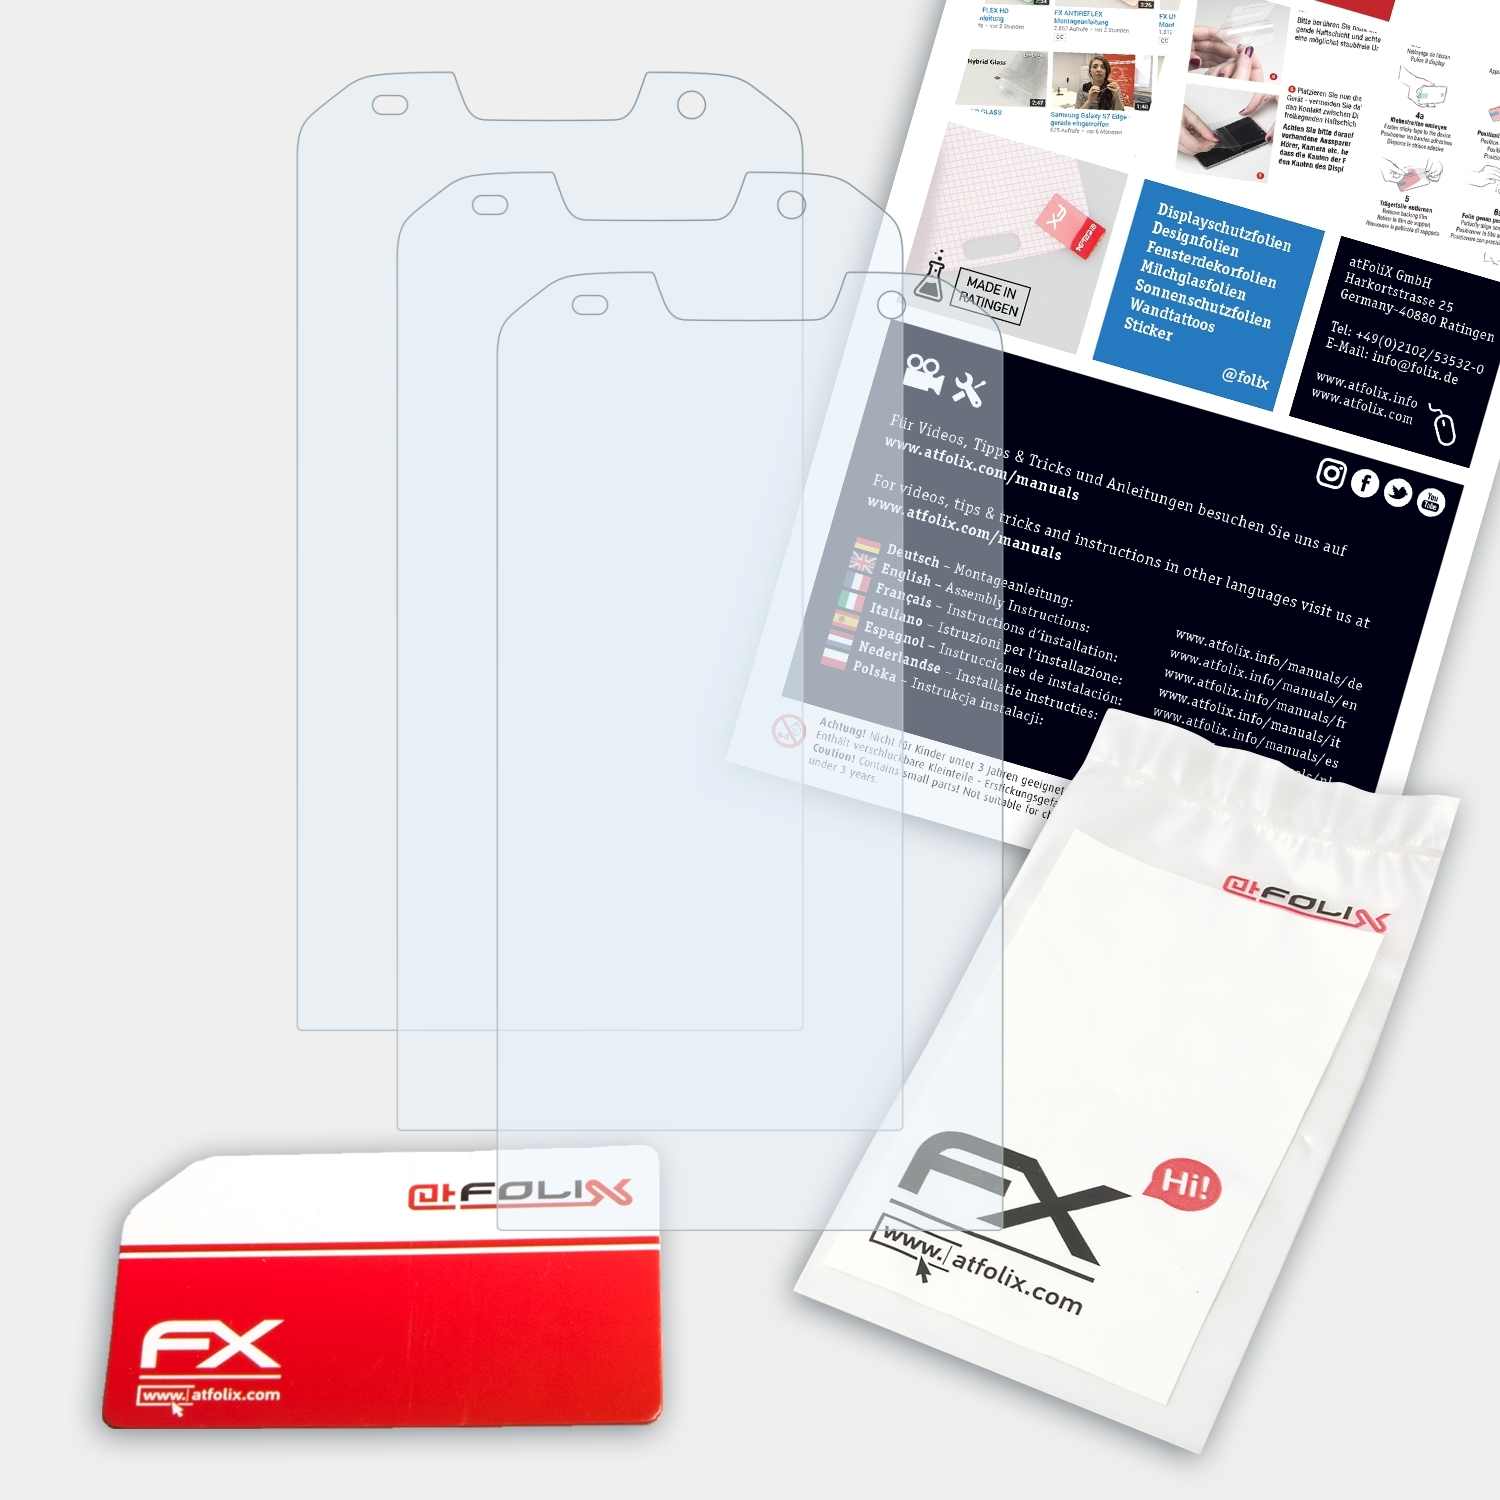 3x FX-Clear S30) Displayschutz(für ATFOLIX Doogee